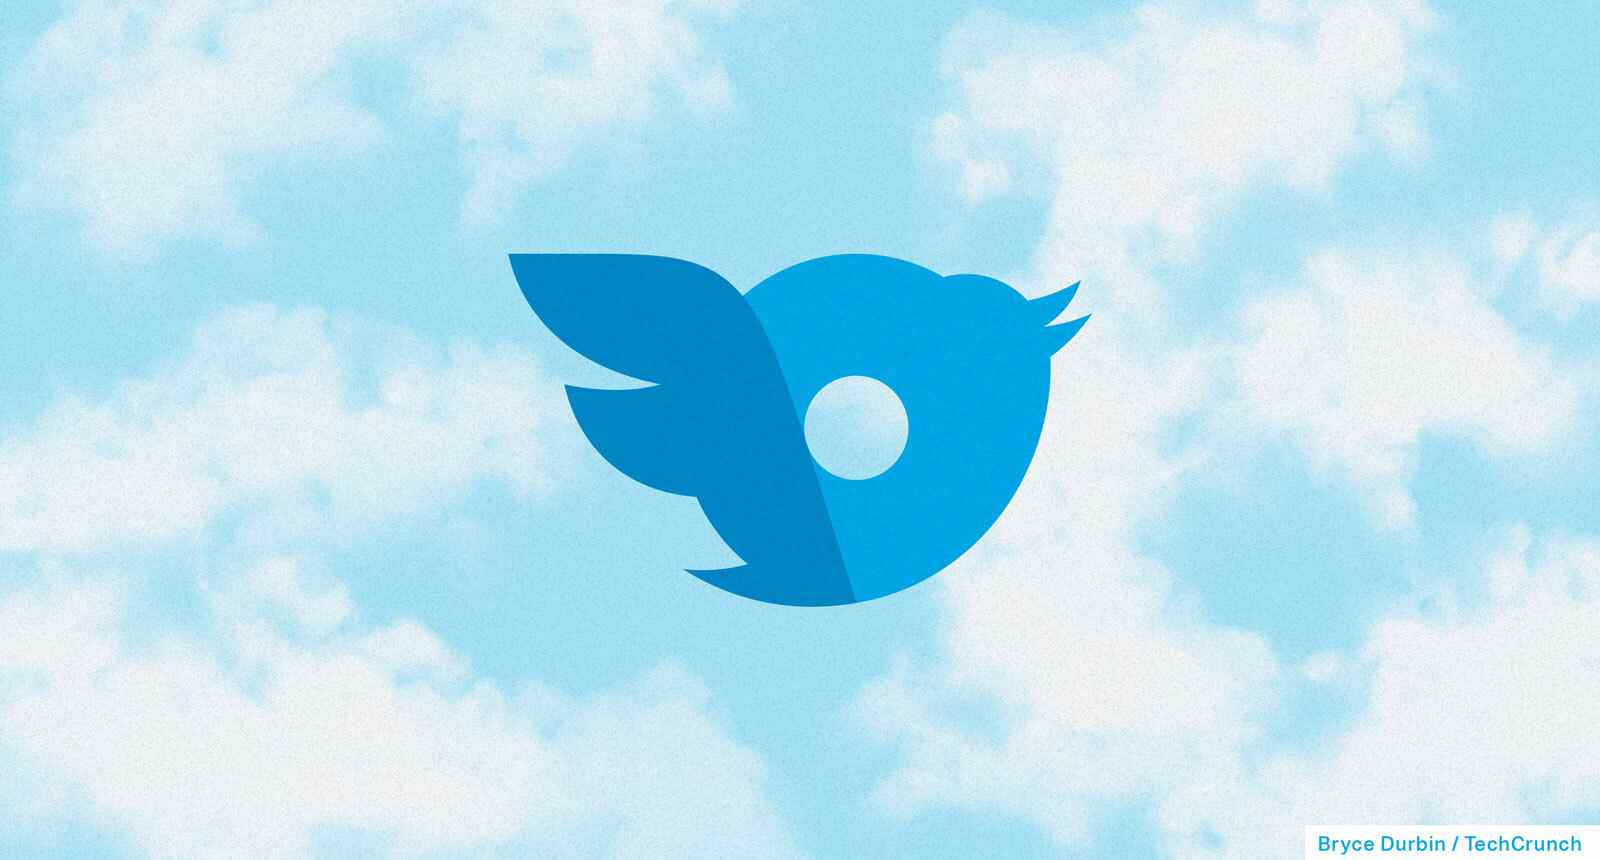 logos twitter et onlyfans écrasés sur un fond nuageux